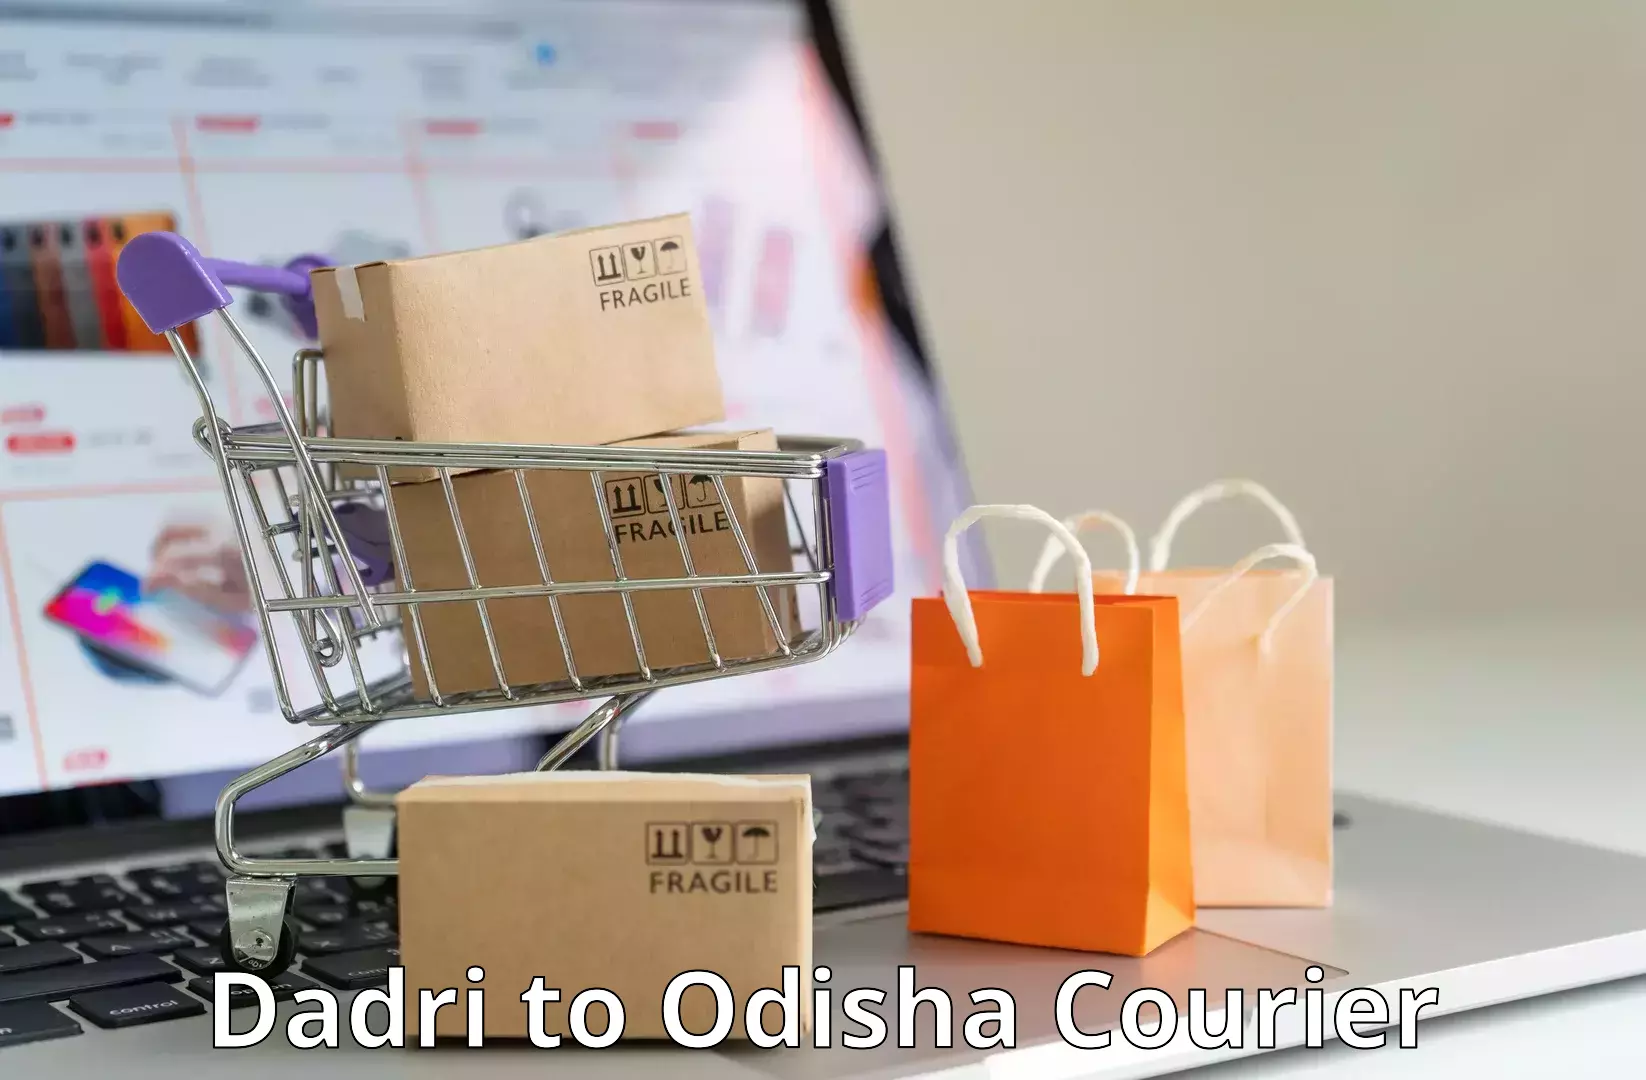 Customized shipping options Dadri to Kodala